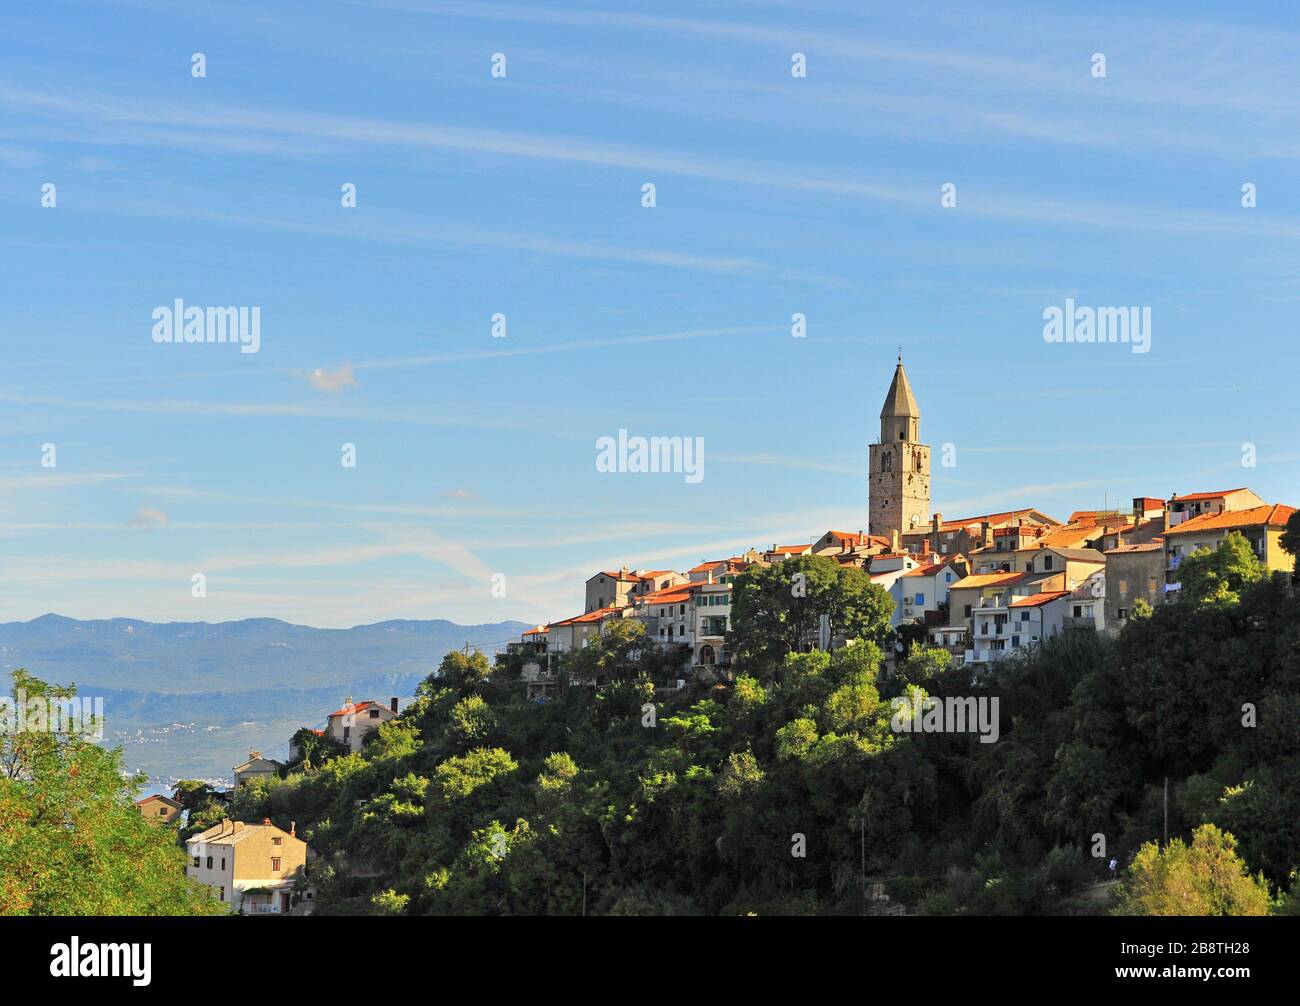 Schöne Aussicht auf die Stadt Vrbnik auf der Insel Krk, Kroatien Stockfoto